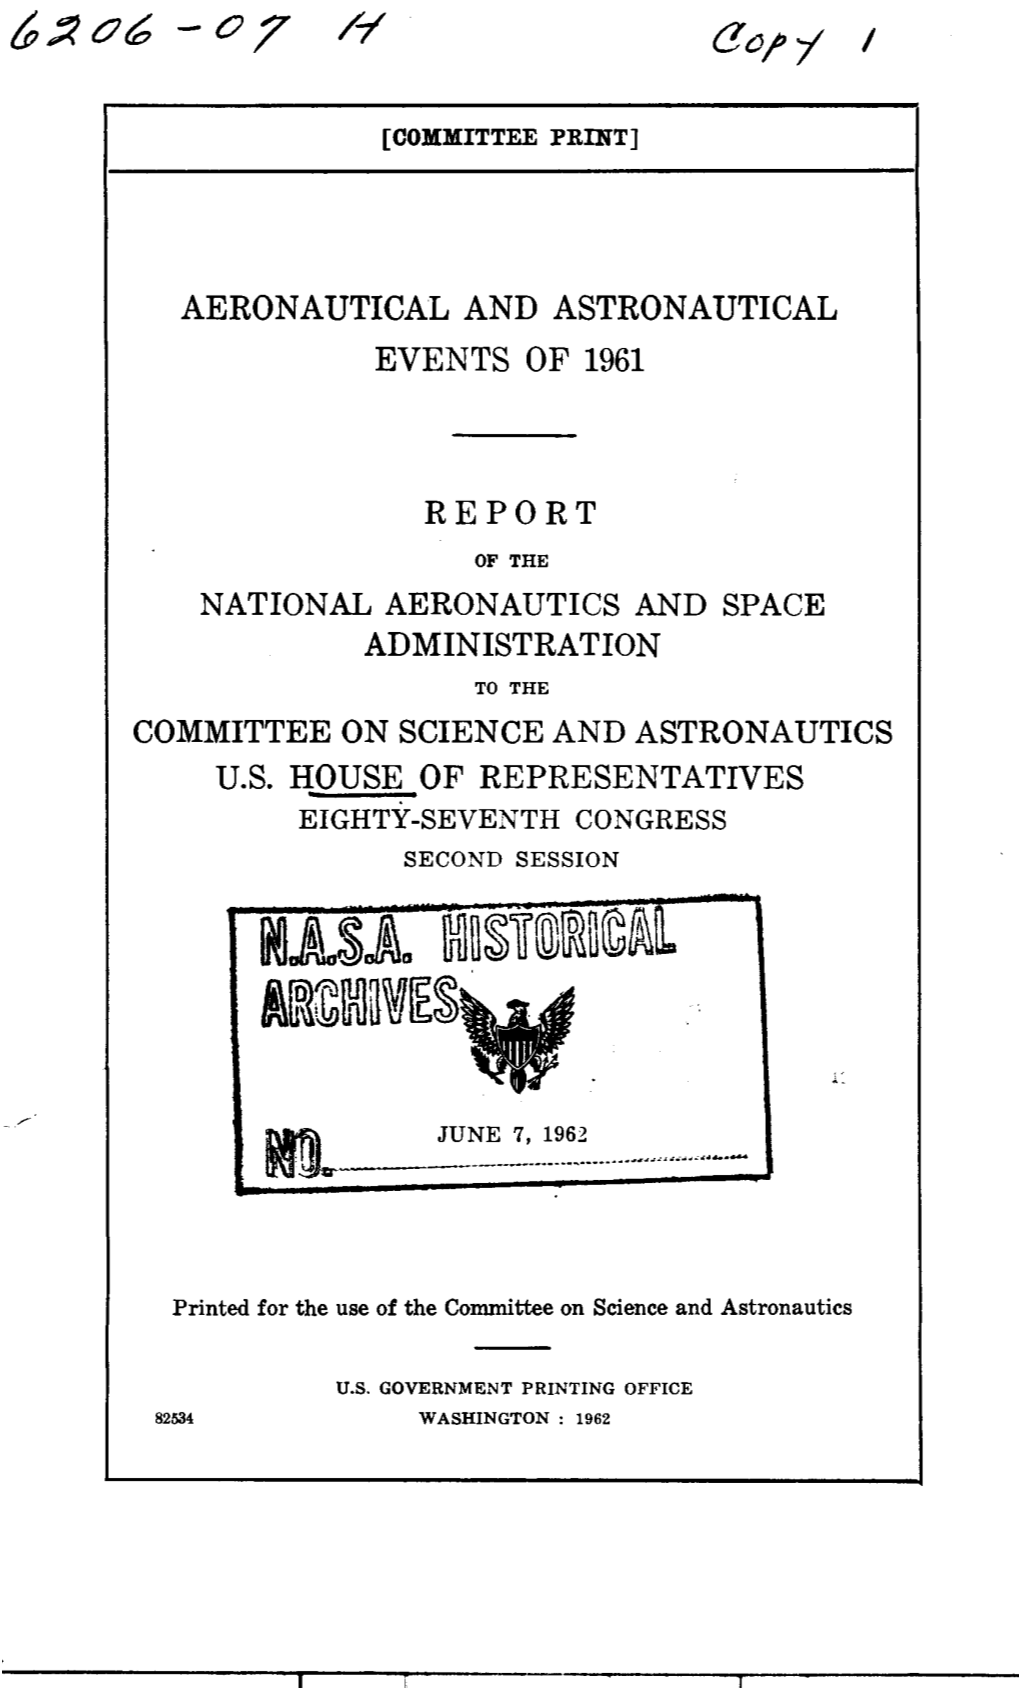 Aeronautical and Astronautical Events of 1961